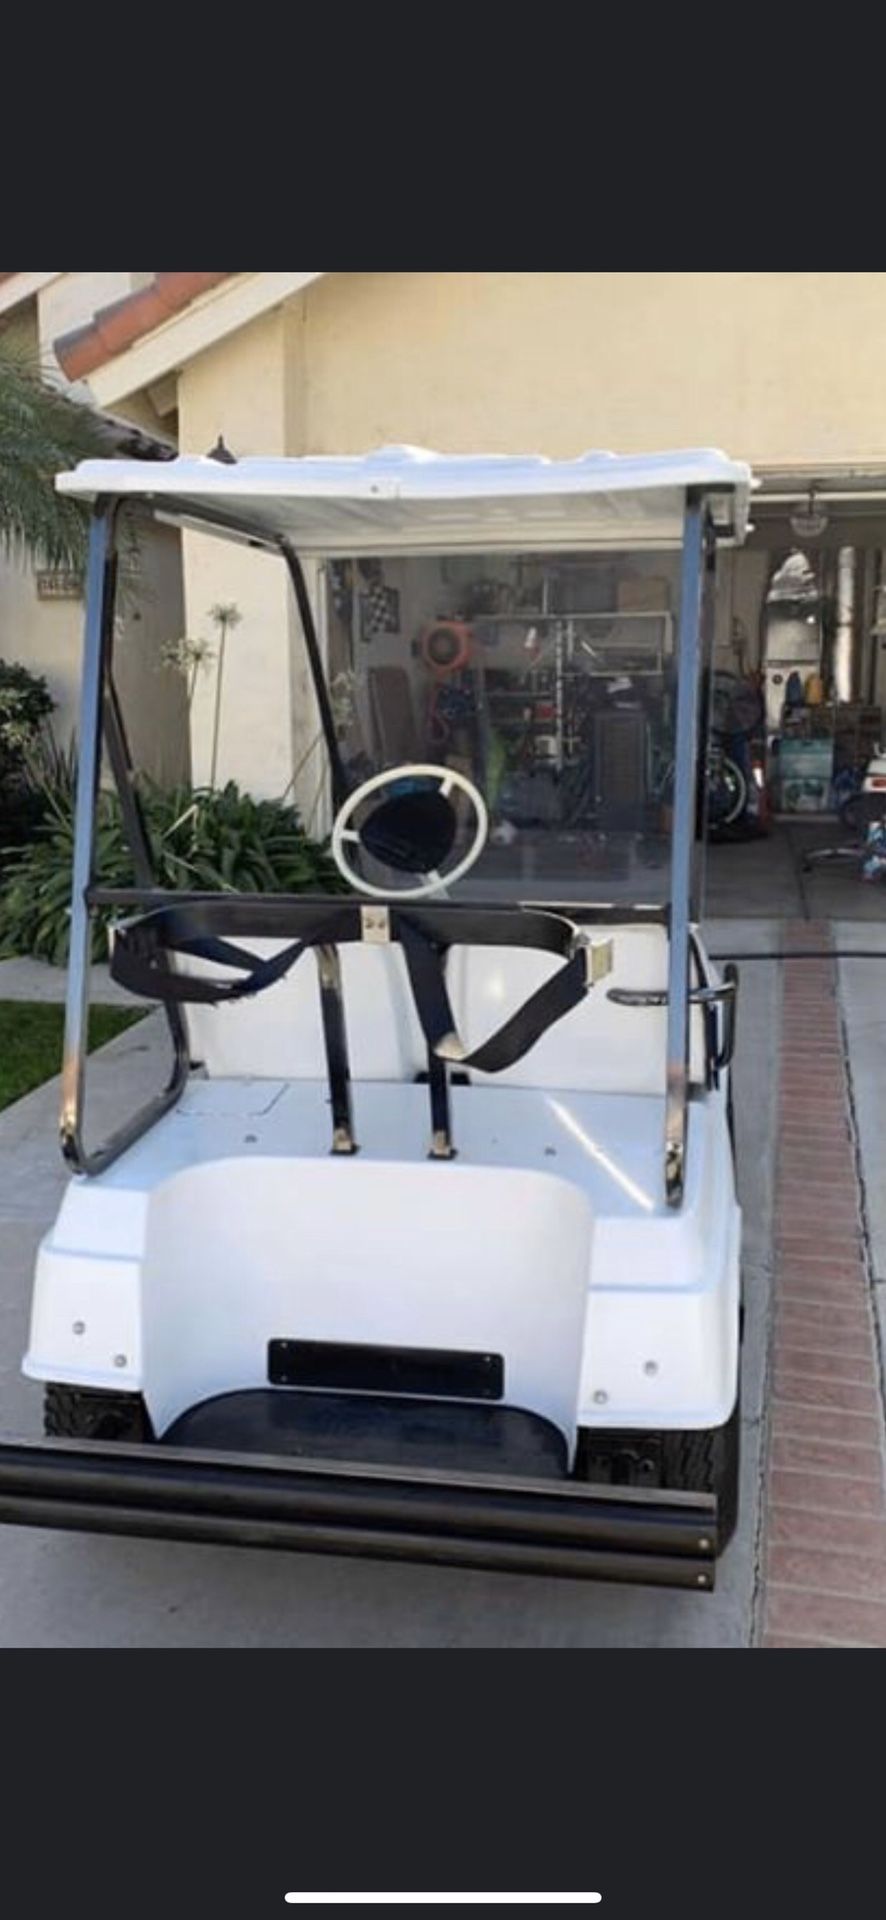 1984 electric Yamaha golf cart